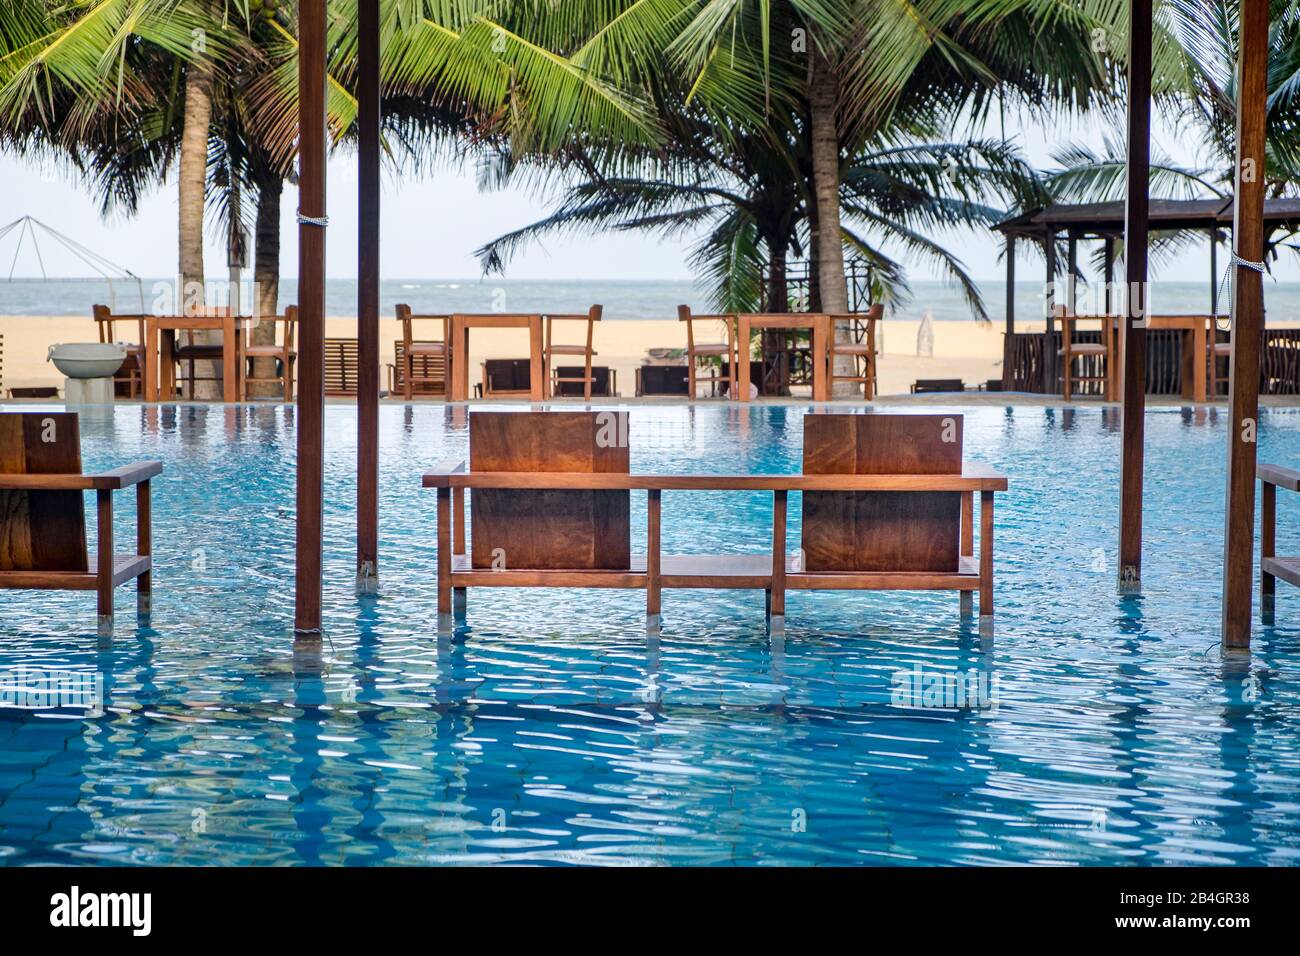 Bancos de madera como asientos en una piscina, hotel Foto de stock